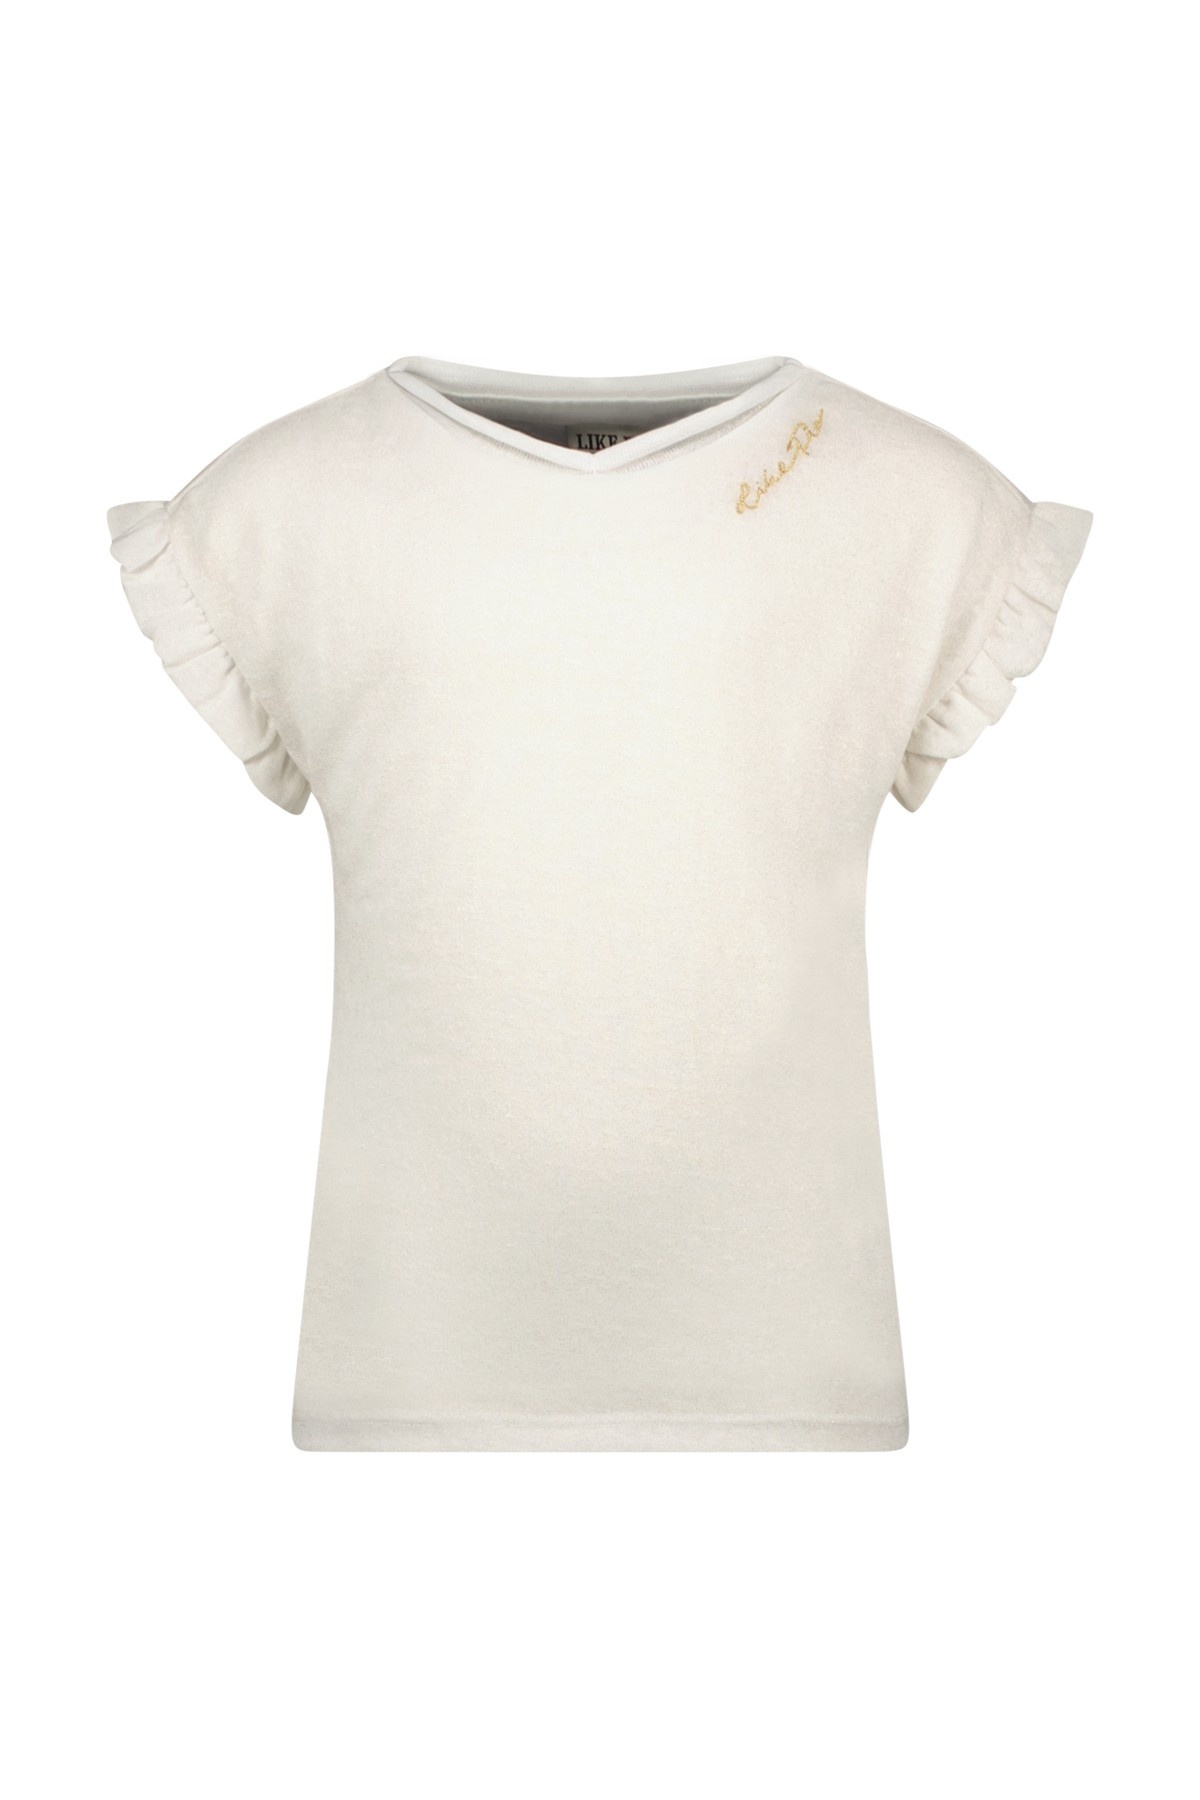 Like Flo F311-5440 Meisjes T-shirt - Off white - Maat 128